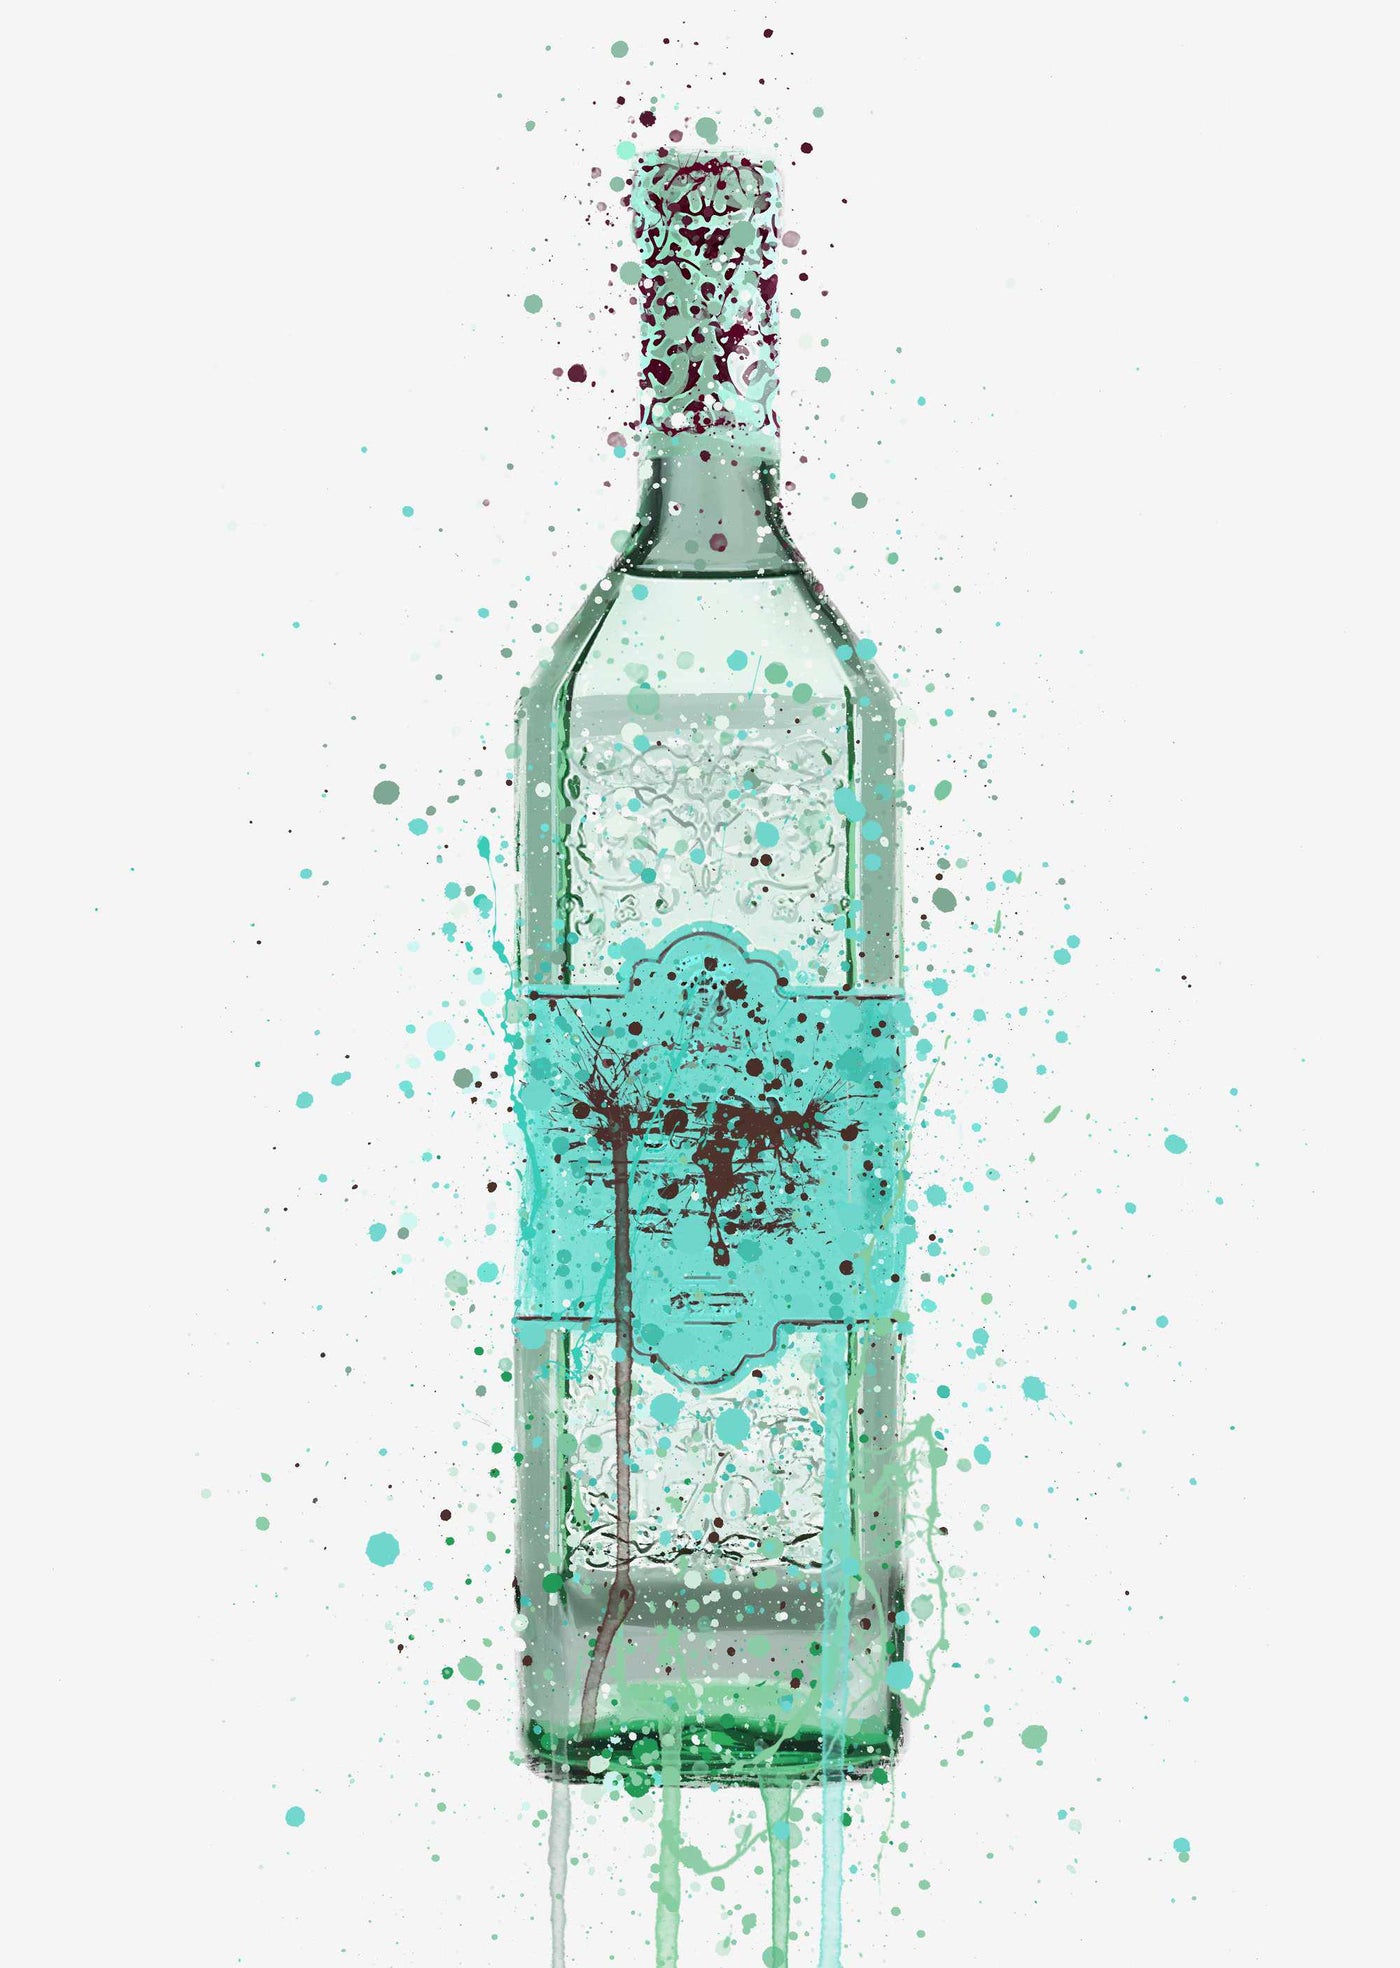 Gin Bottle Wall Art Print 'Duck Egg Blue'